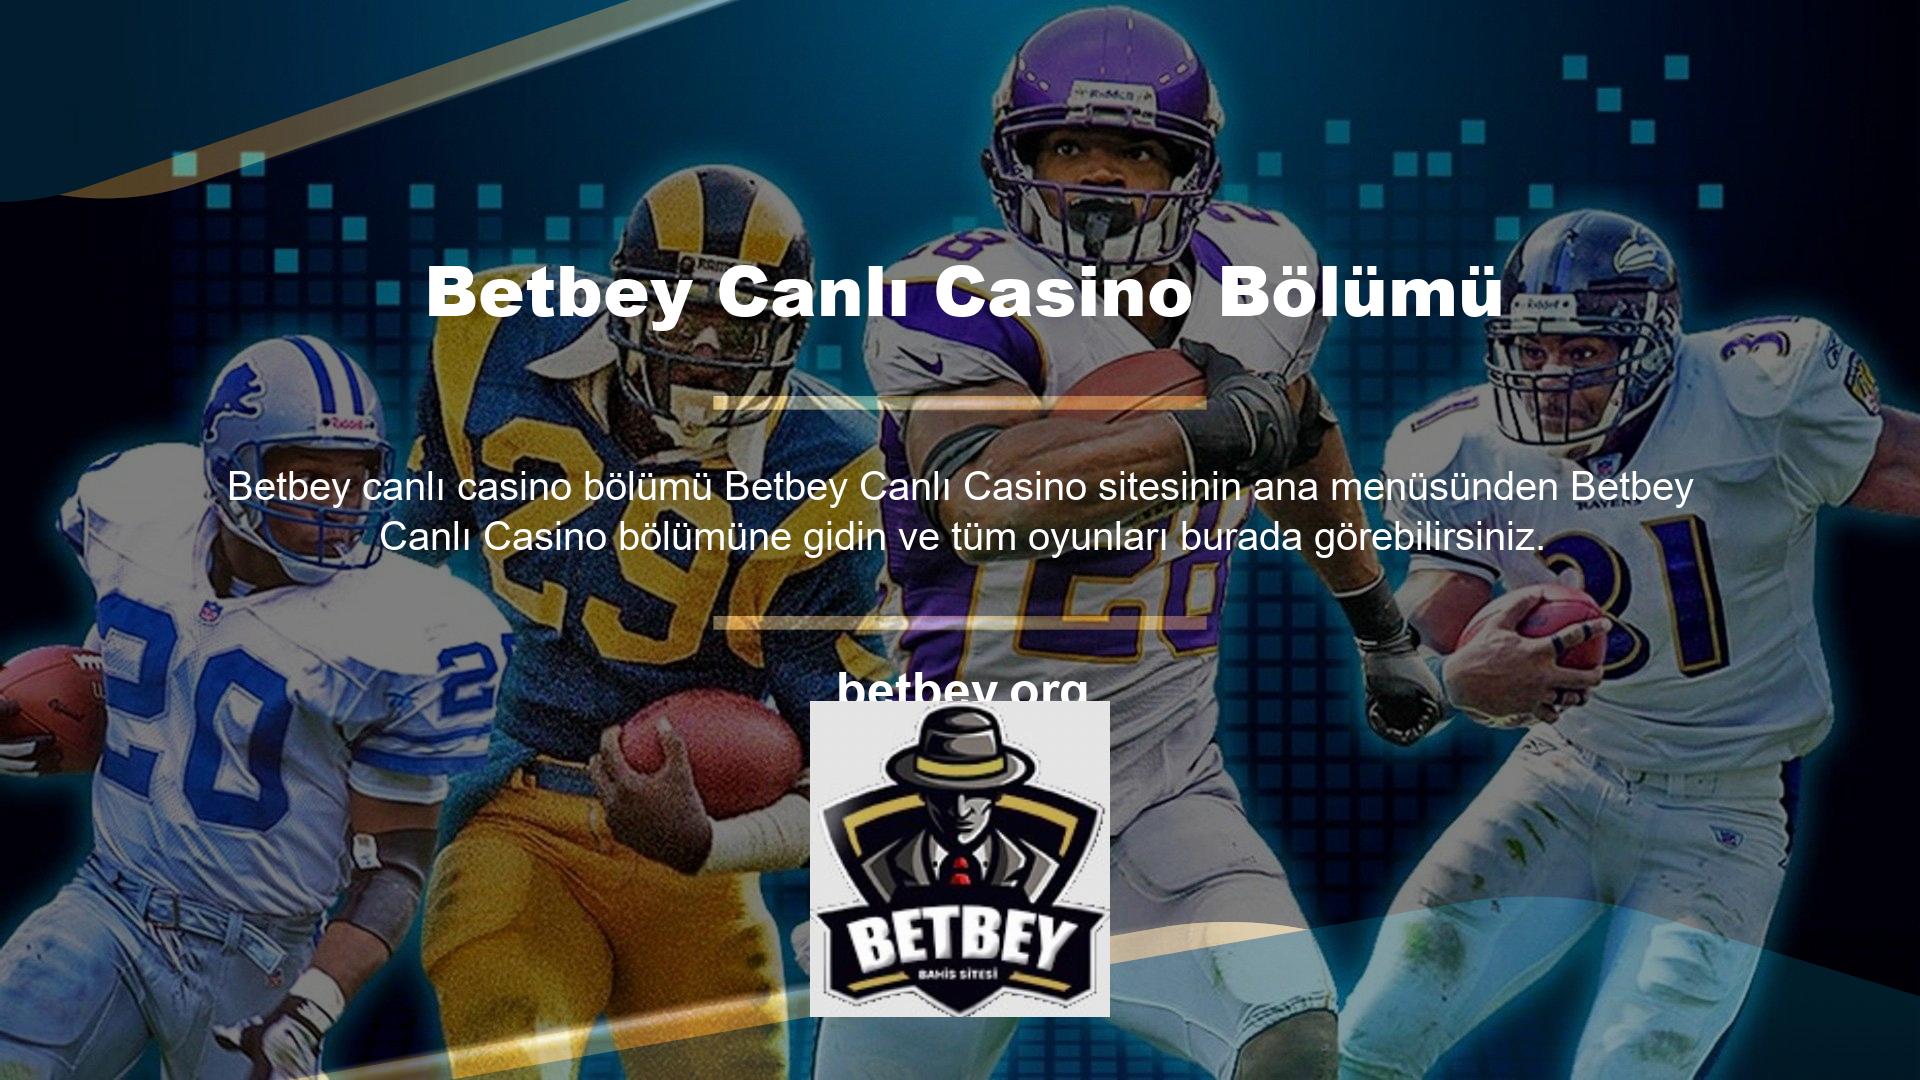 Sitenin diğer tüm bölümlerinde olduğu gibi Betbey mobil uygulaması da canlı casinoya cep telefonunuzdan kolayca erişmenizi sağlar